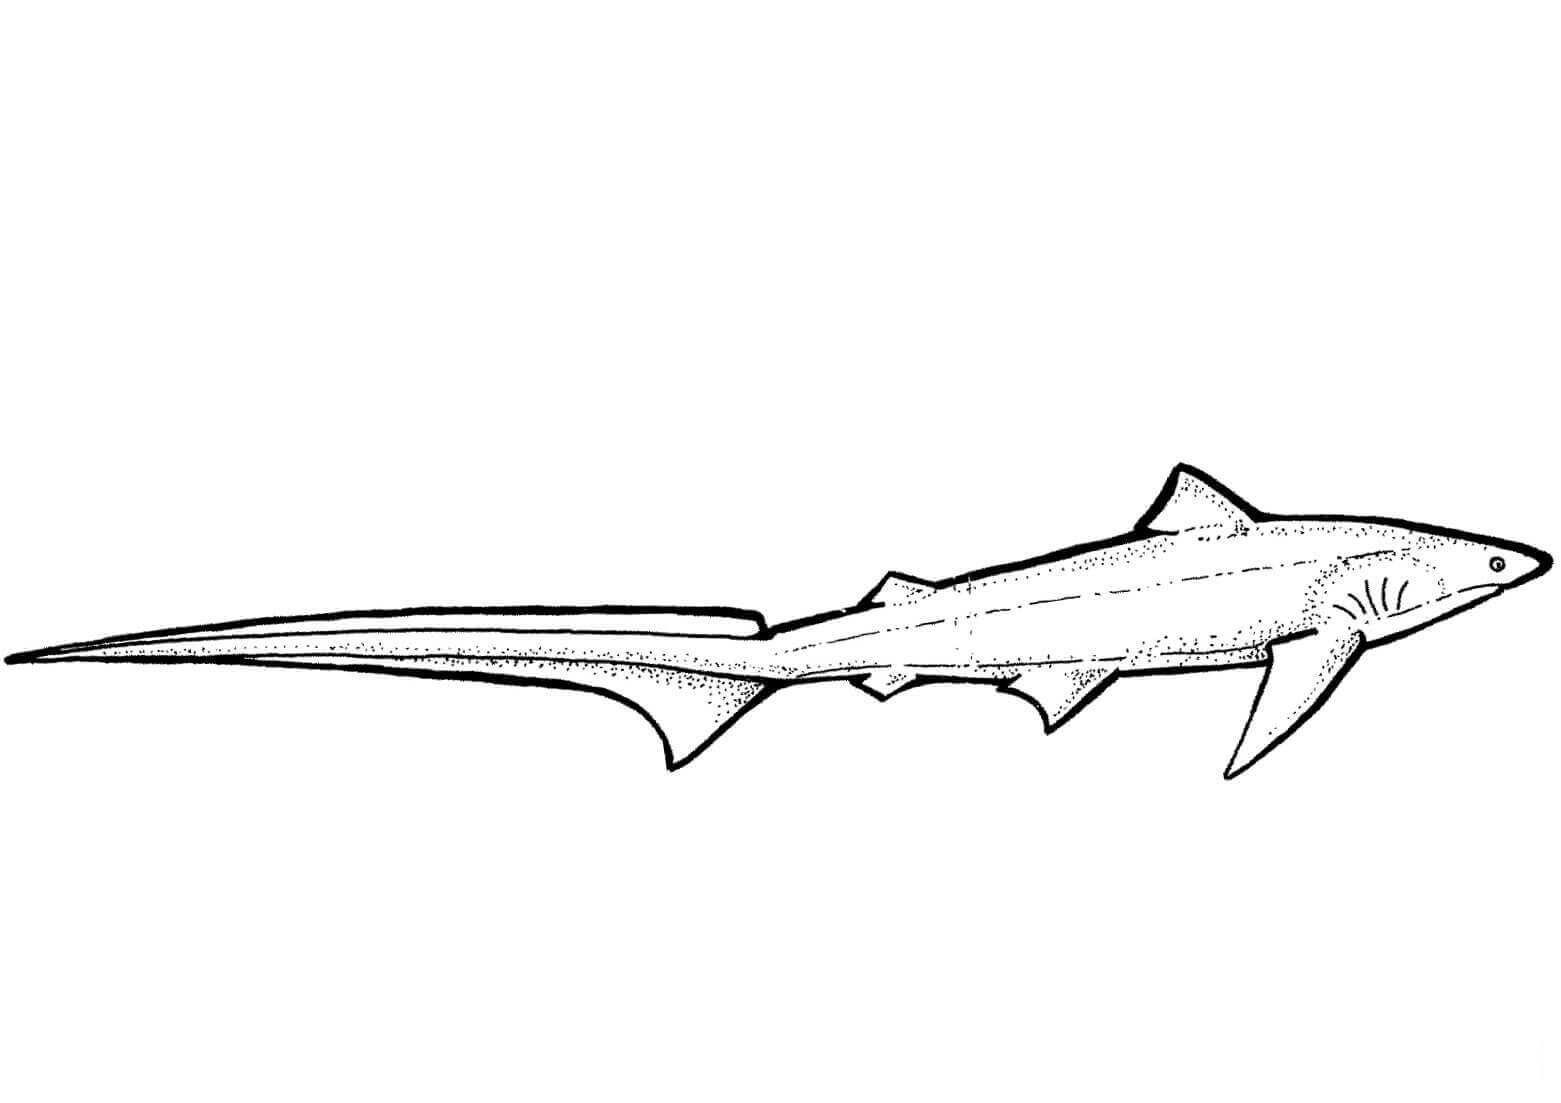 Der Fuchshai hat von Shark extrem lange Schwänze